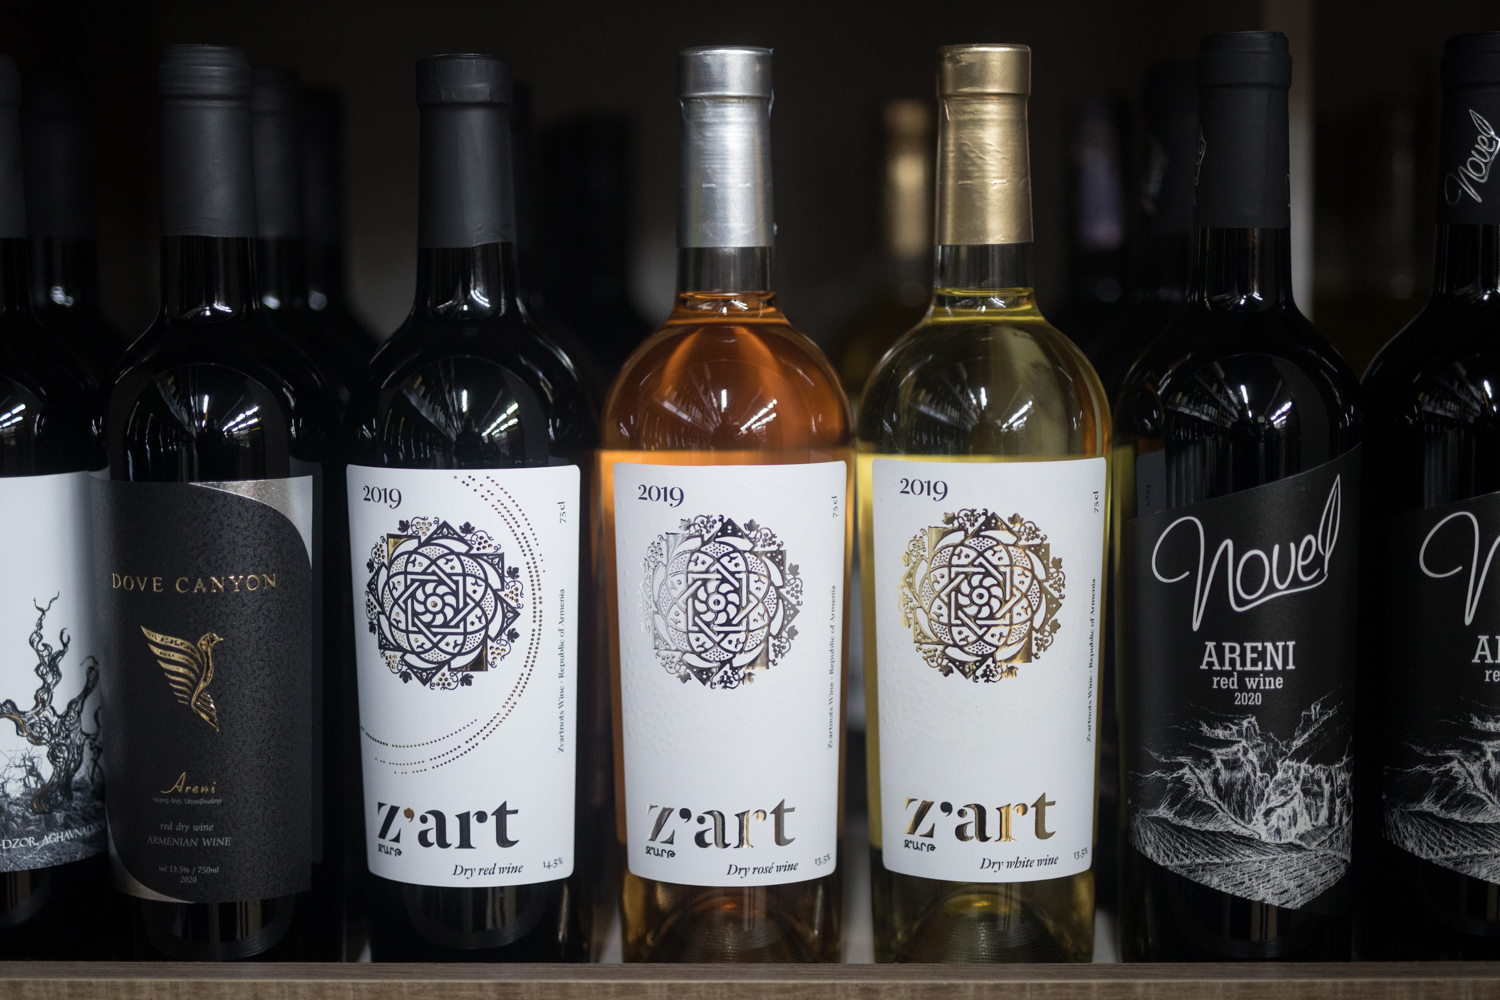 Հայկական գինիների վեց անուն՝ Vino & Vino-ի պորտֆելում